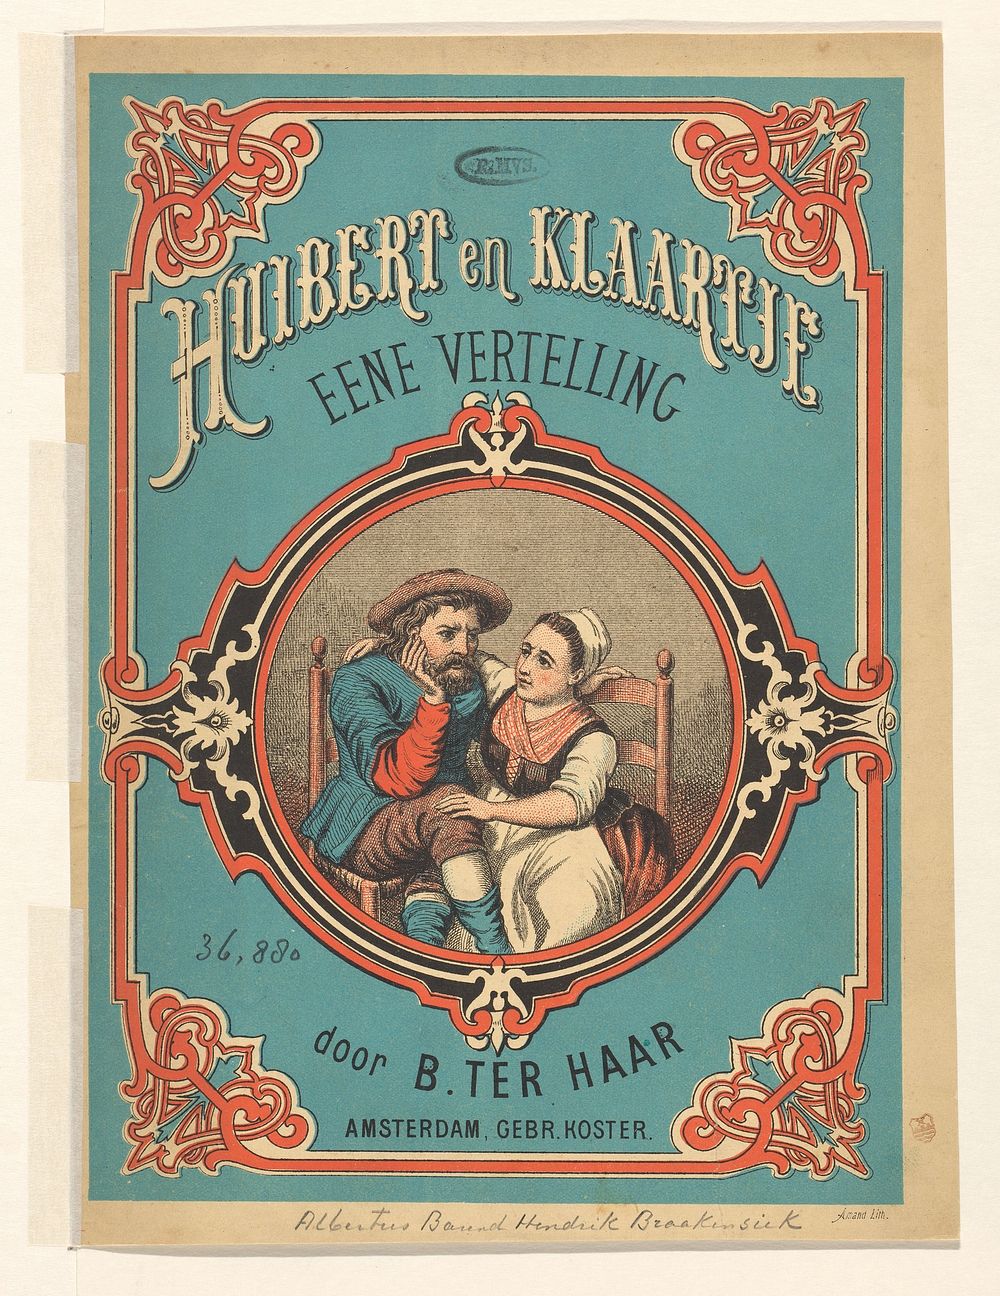 Peinzende man en troostende vrouw (1851 - 1884) by Albertus Barend Hendrik Braakensiek, Amand and Gebroeders Koster